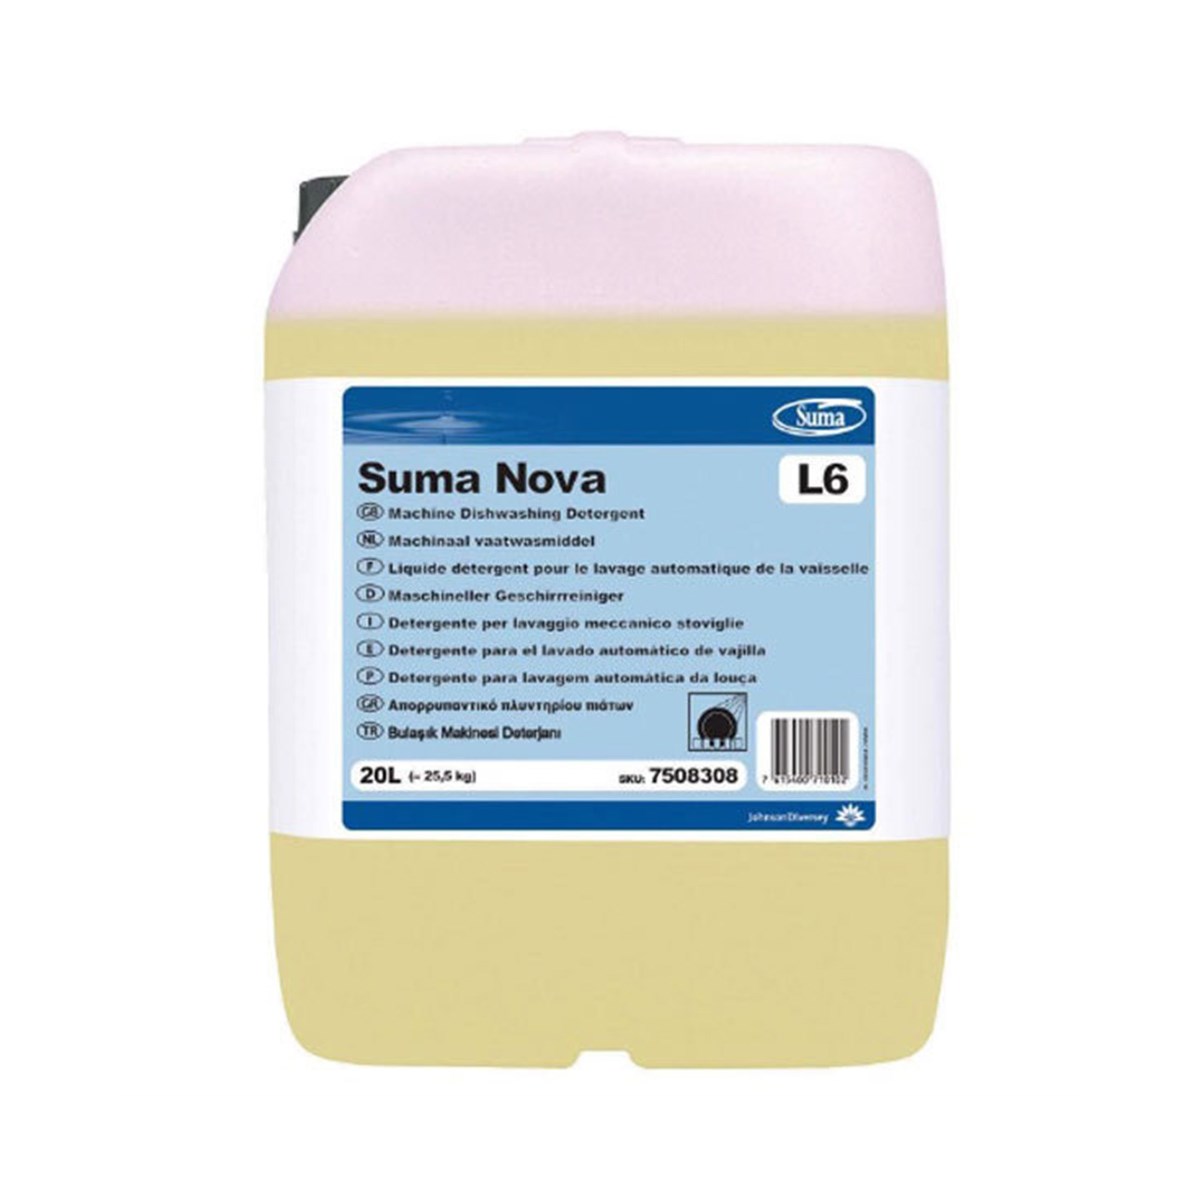 Suma Nova L6 Sanayi Tipi Bulaşık Makinası Deterjanı 20 Litre 70009244